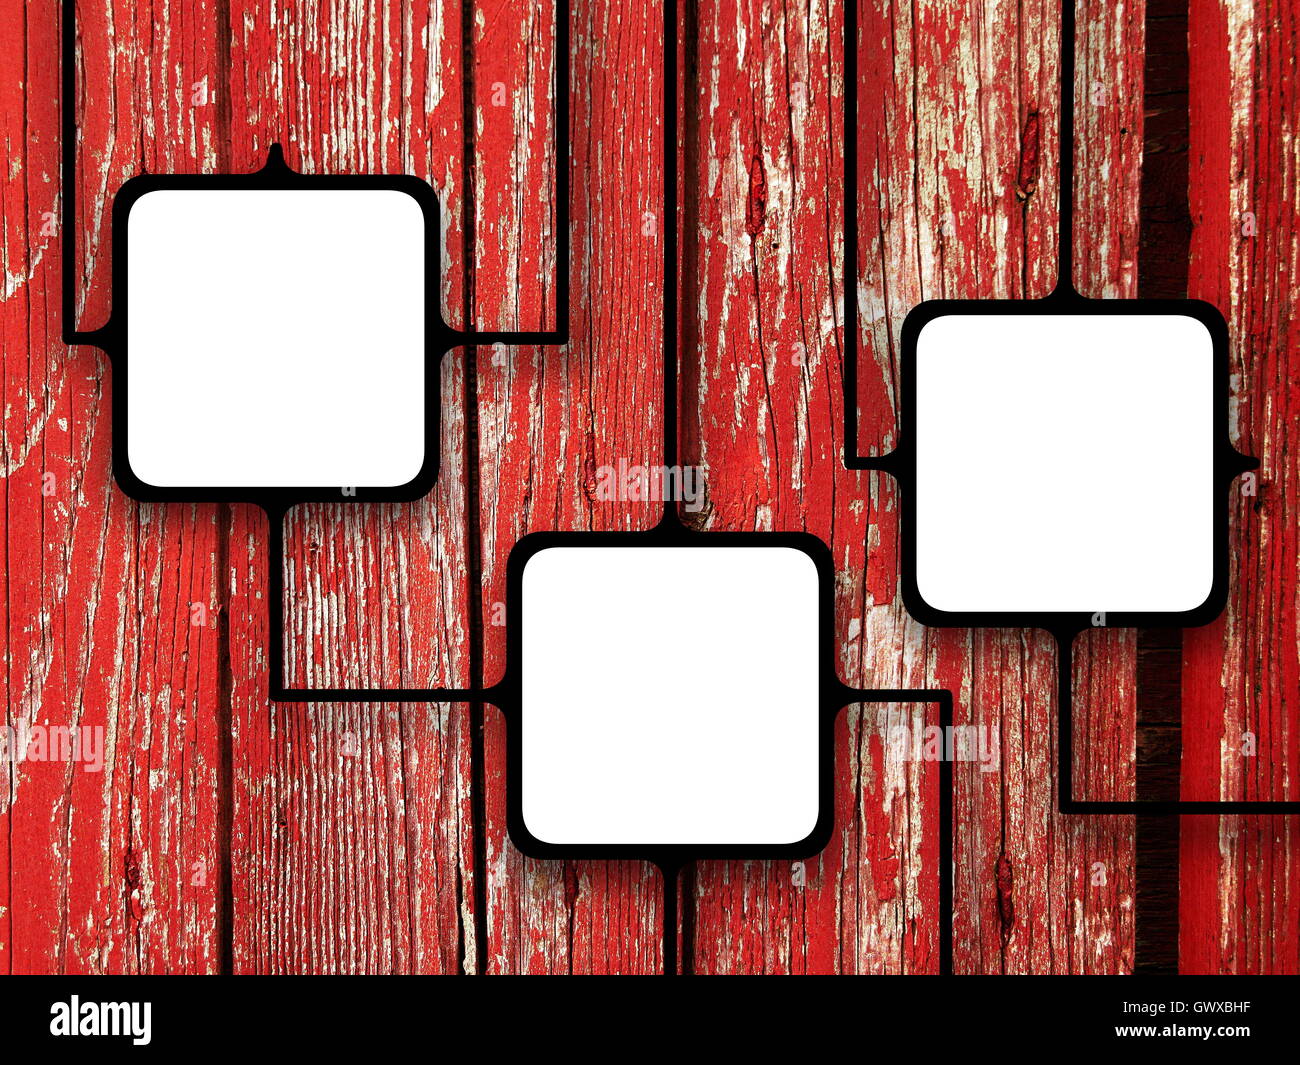 Près de trois cadres photo vierge carré noir liés ensemble sur red old weathered wooden boards contexte Banque D'Images